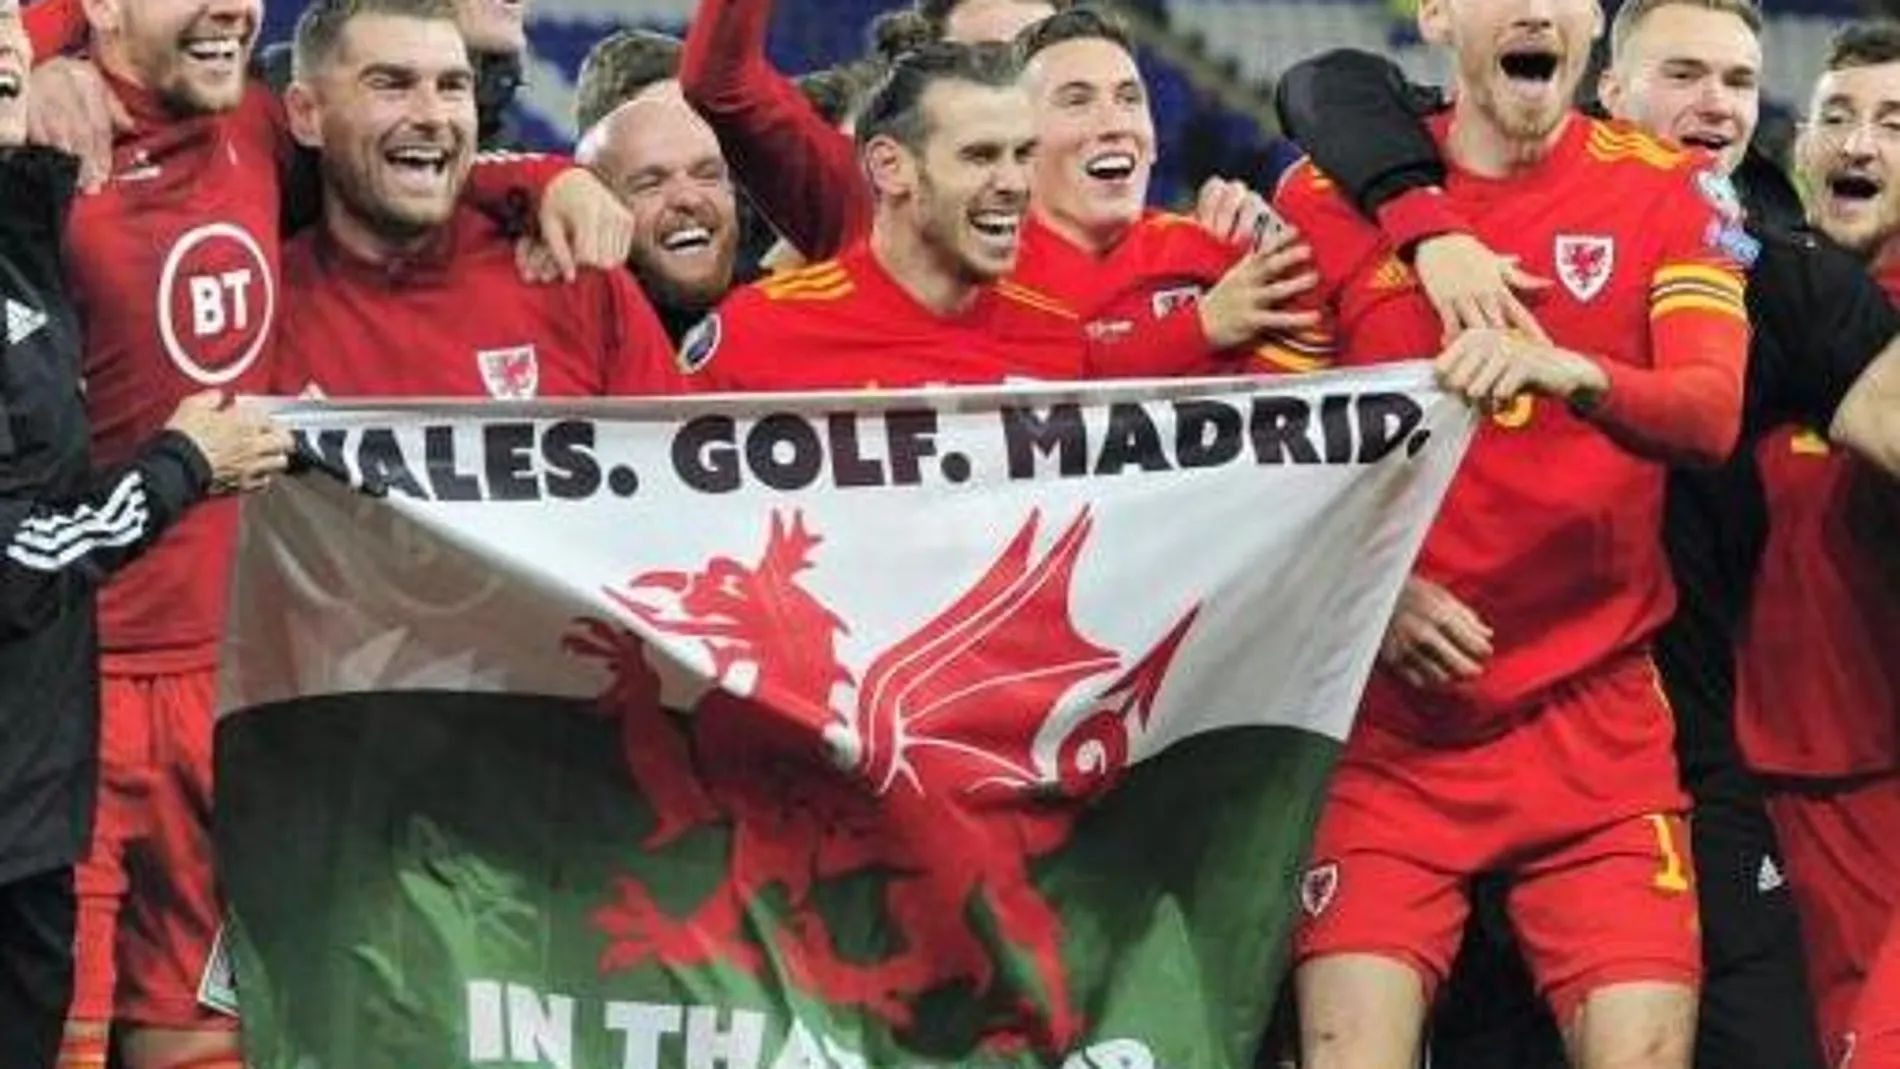 Bale con la polémica bandera que incluye la frase utilizada por el PSG